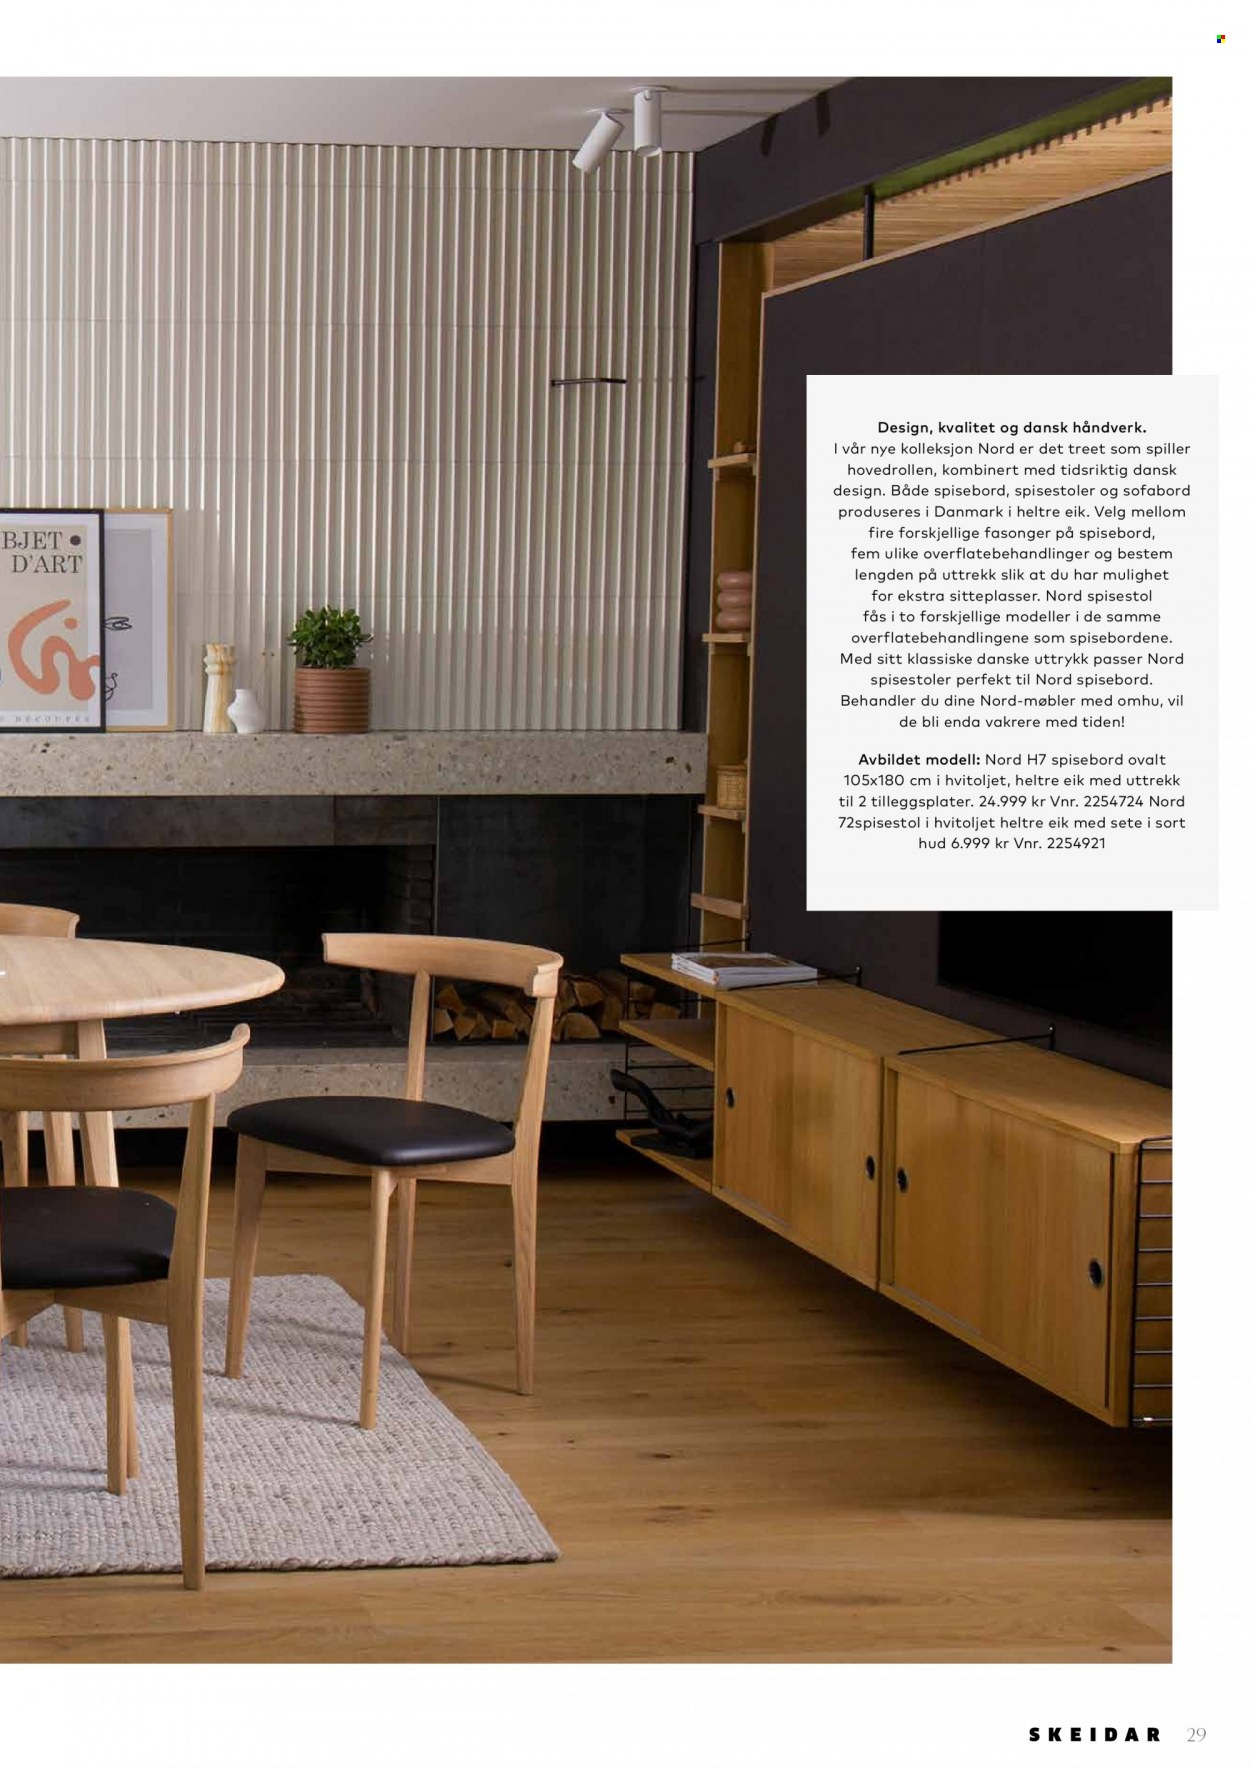 Kundeavis Skeidar - Produkter fra tilbudsaviser - bord, spisebord, stol, spisestol. Side 29.